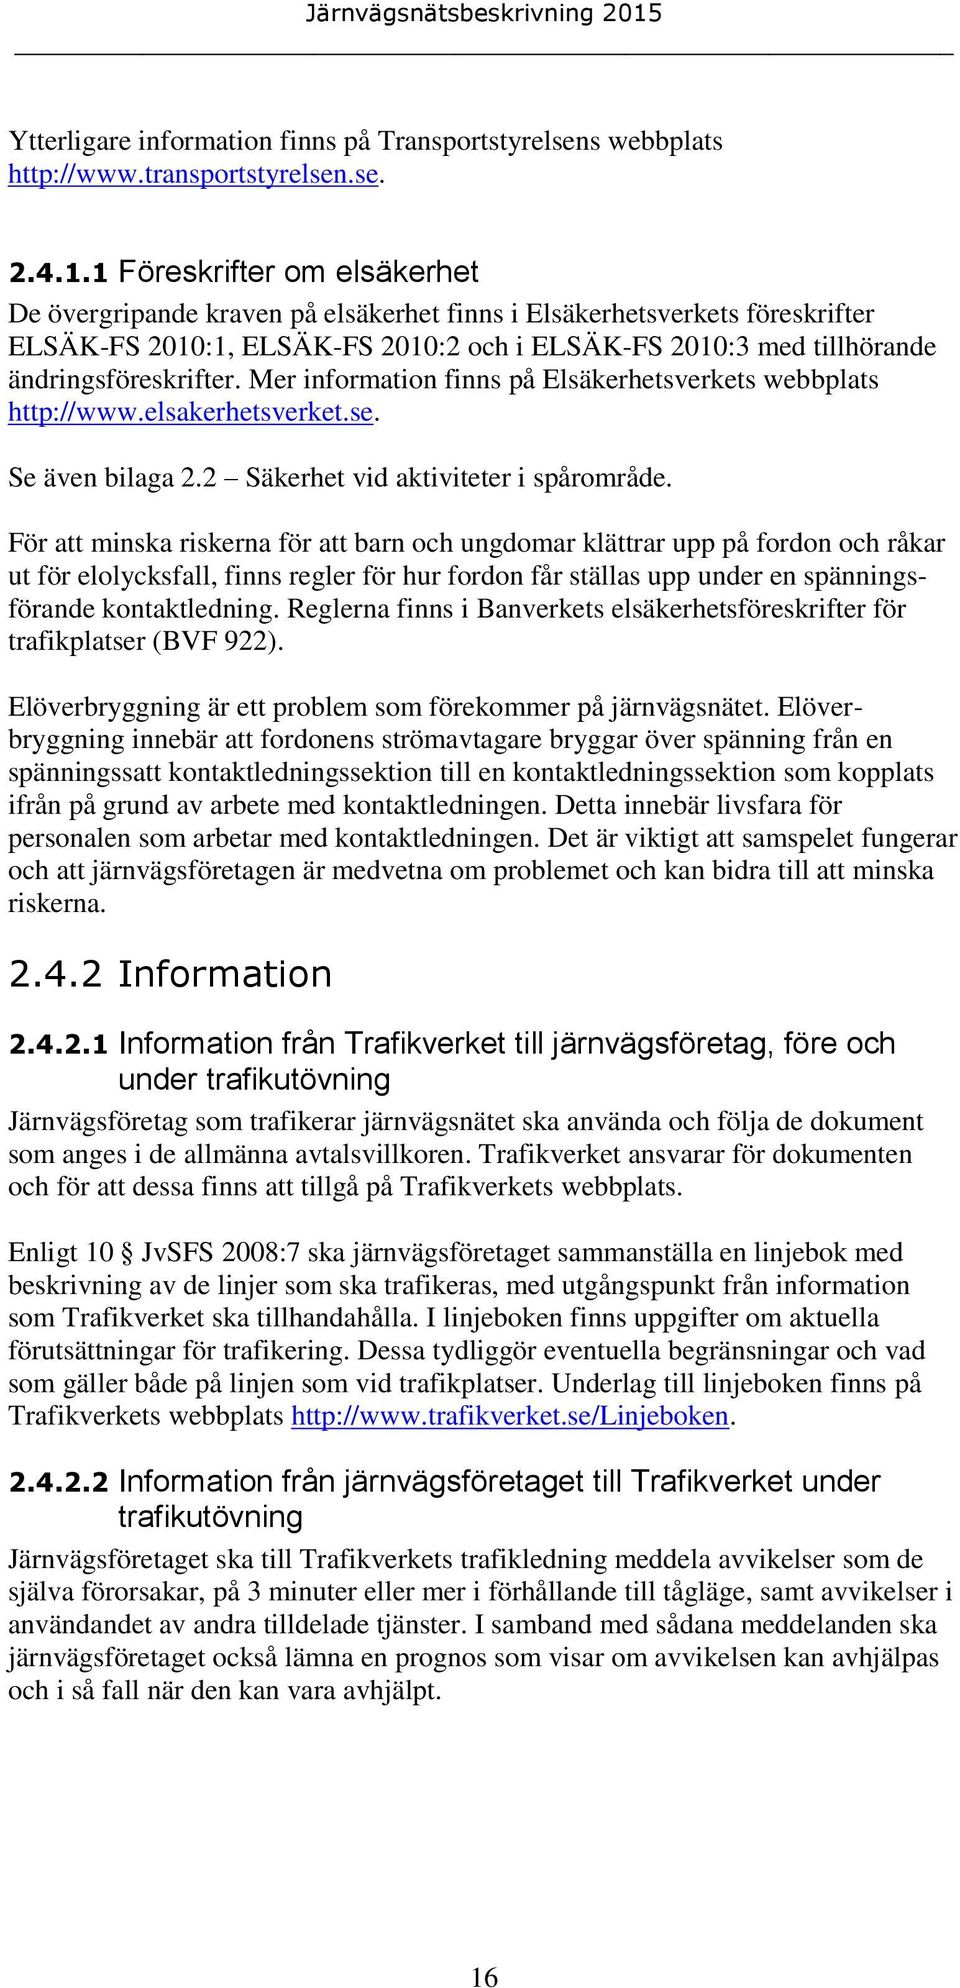 Mer information finns på Elsäkerhetsverkets webbplats http://www.elsakerhetsverket.se. Se även bilaga 2.2 Säkerhet vid aktiviteter i spårområde.